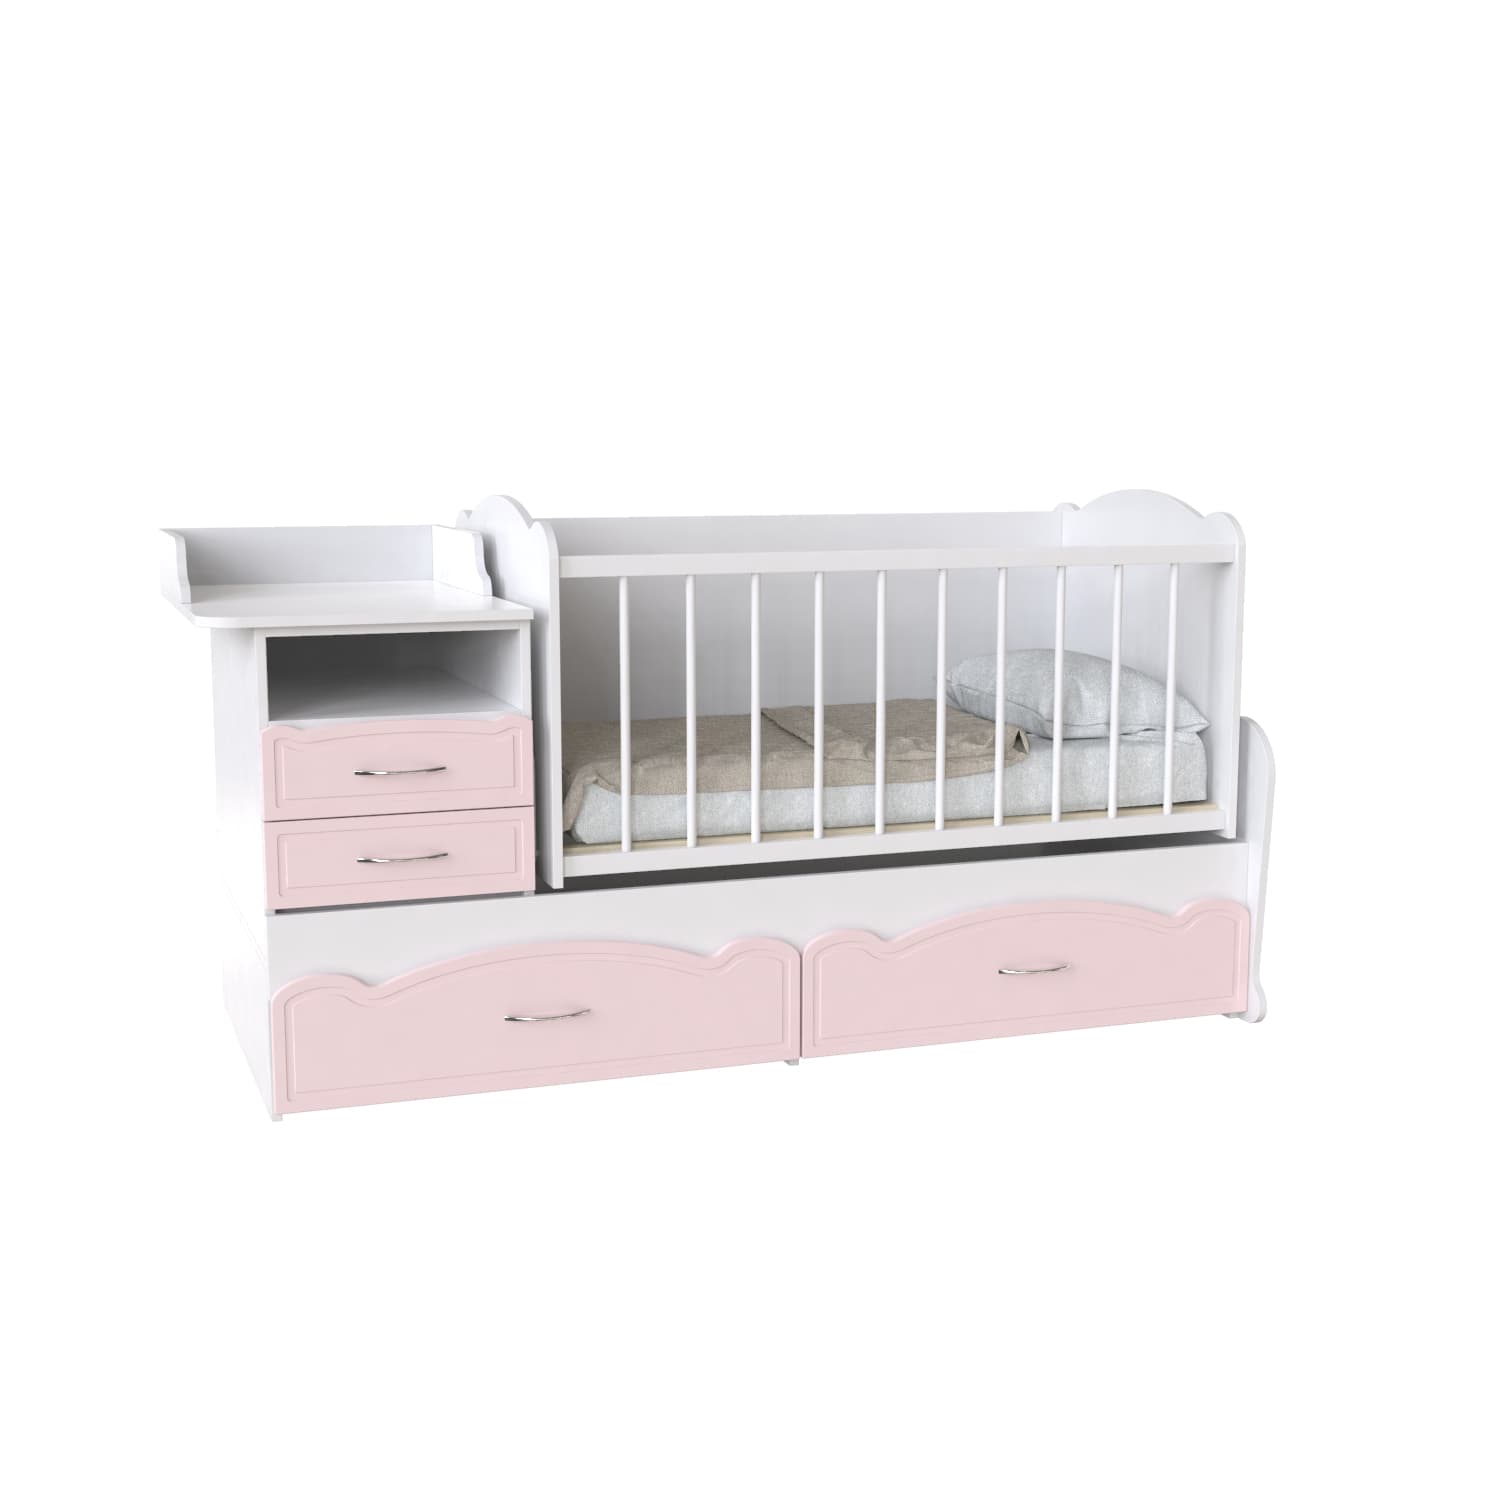 Кровать детская - Трансформер 3в1 Binky ДС043 Аляска / Розовый (решётка Белая)